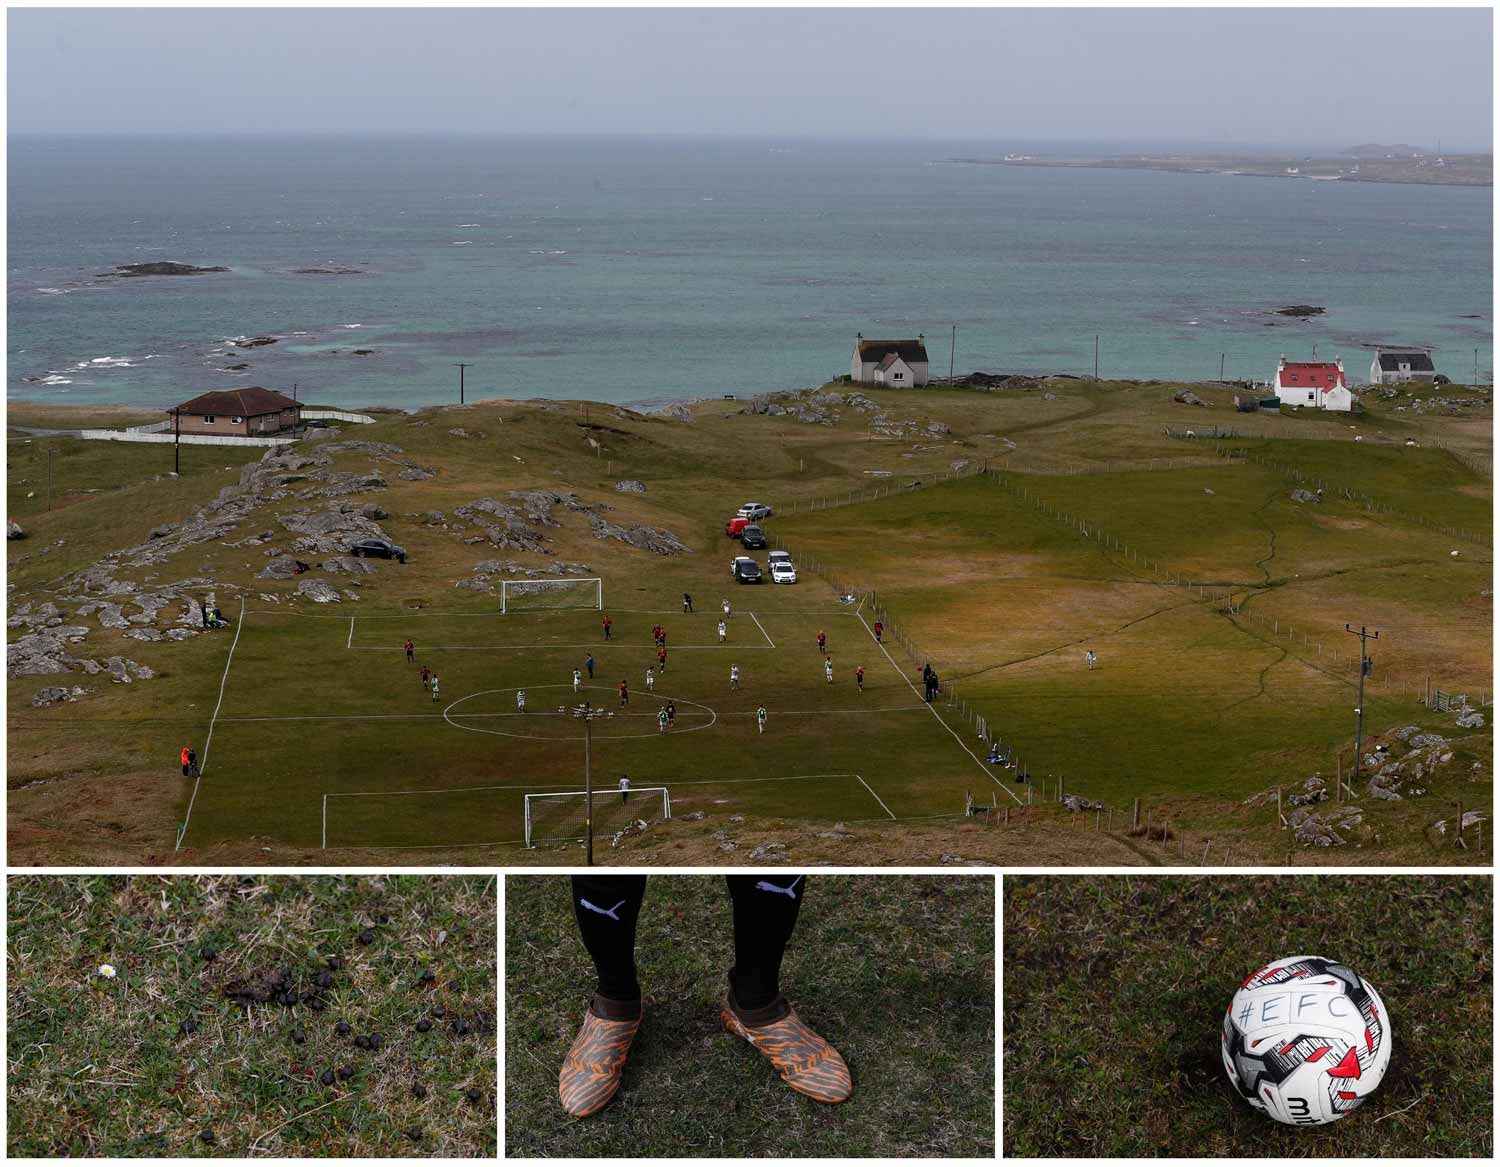  Em Eriskay, uma ilha da Esc&oacute;cia, um grupo de pessoas joga futebol num campo junto ao mar. Foto: Russell Cheyne - Reuters  